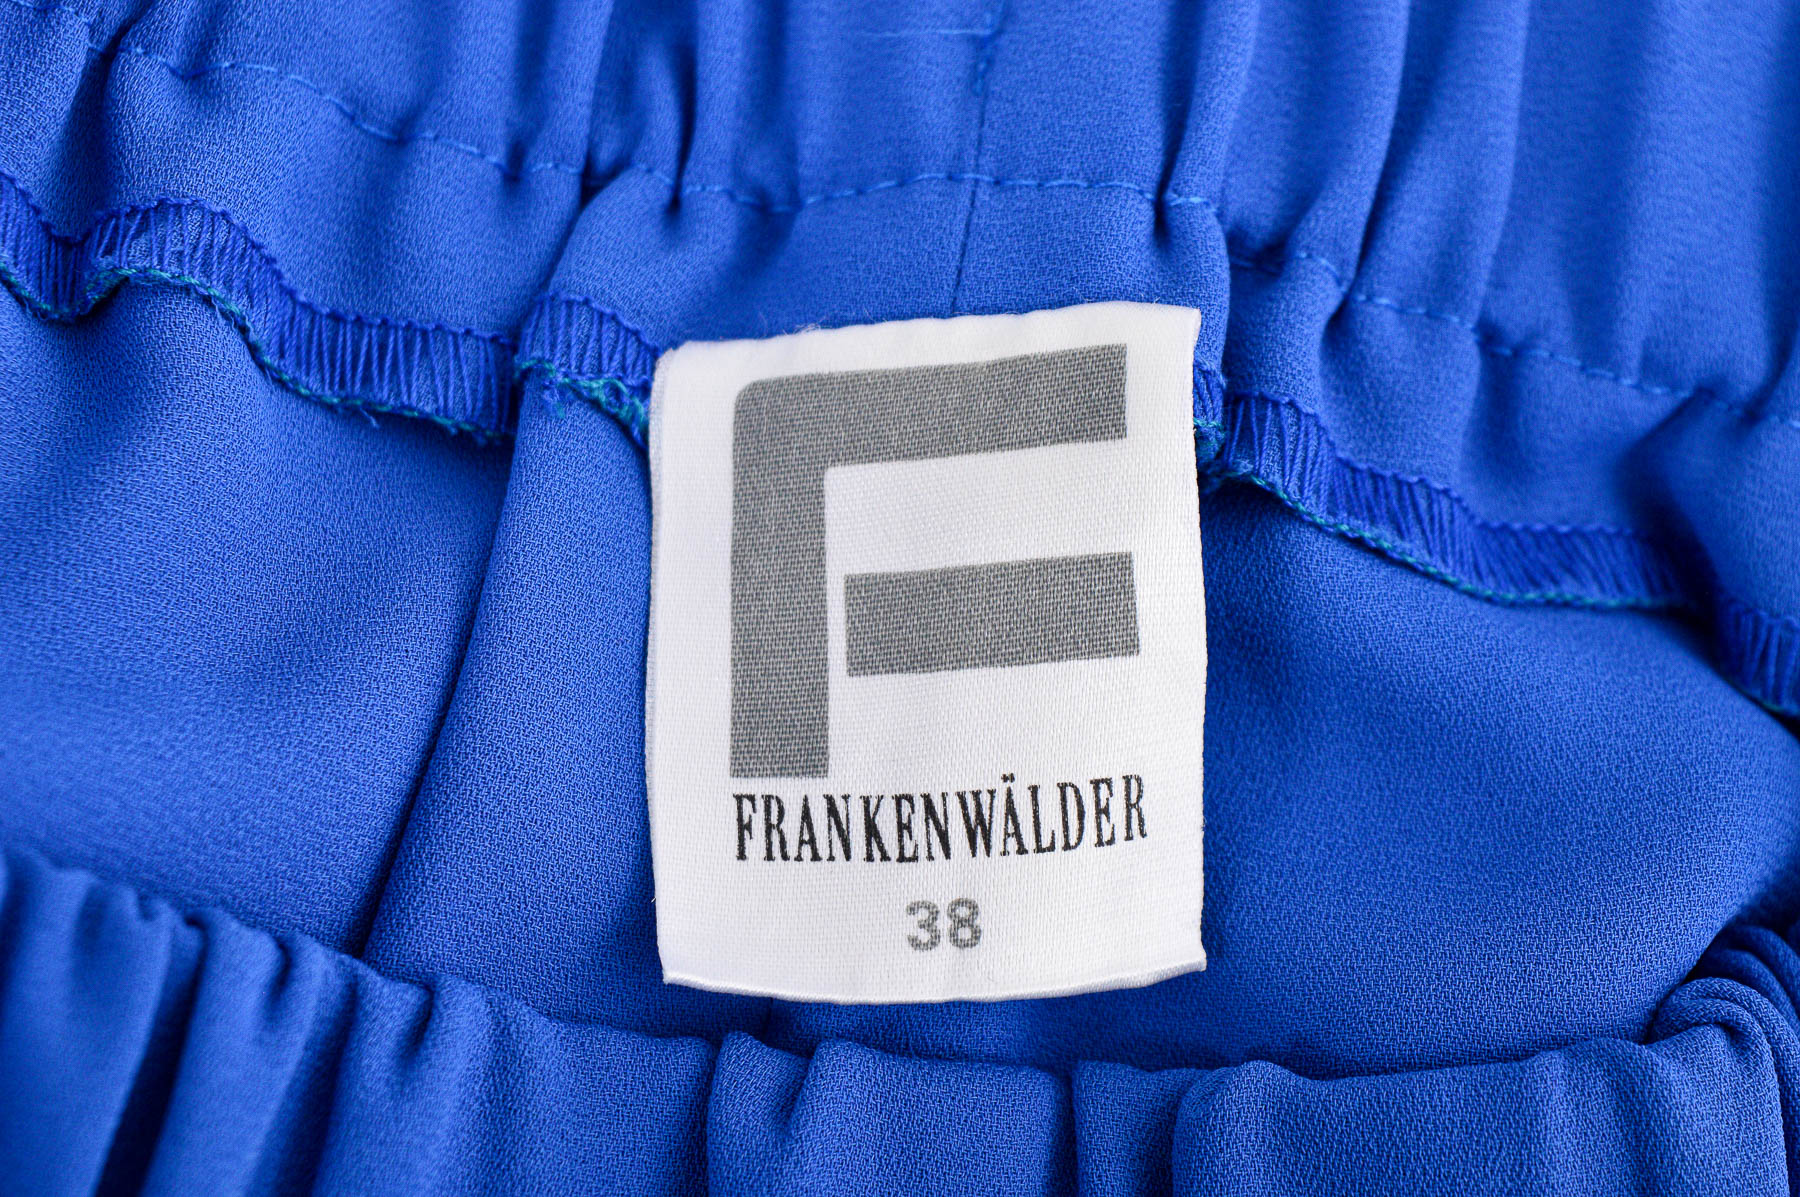 Skirt - Franken Walder - 2